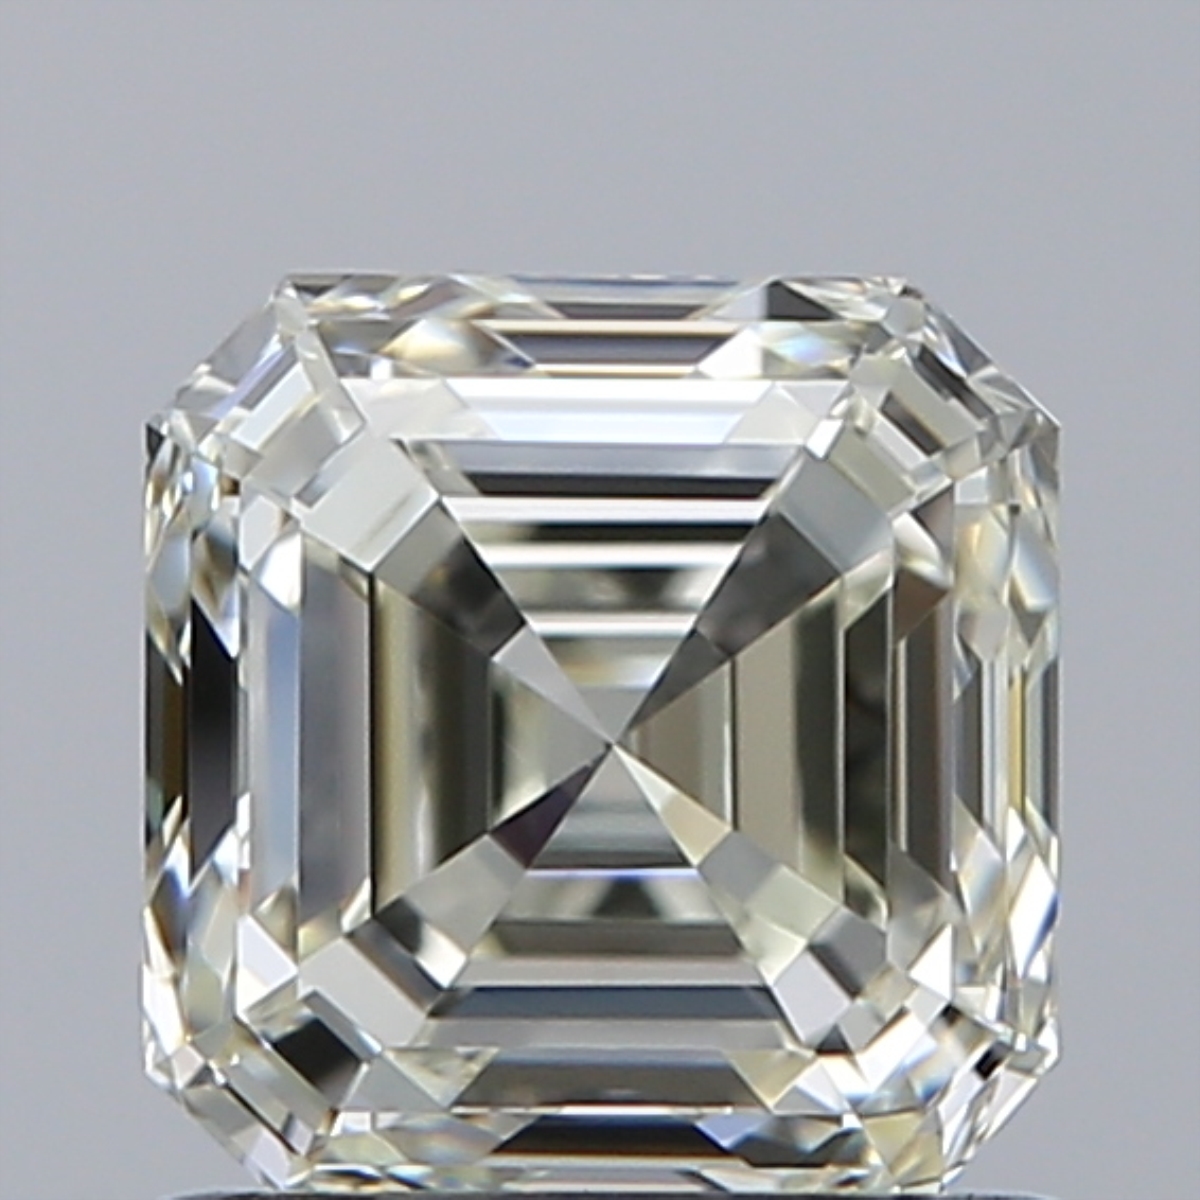 1.01 Carat Asscher Loose Diamond, J, VVS1, Super Ideal, IGI Certified